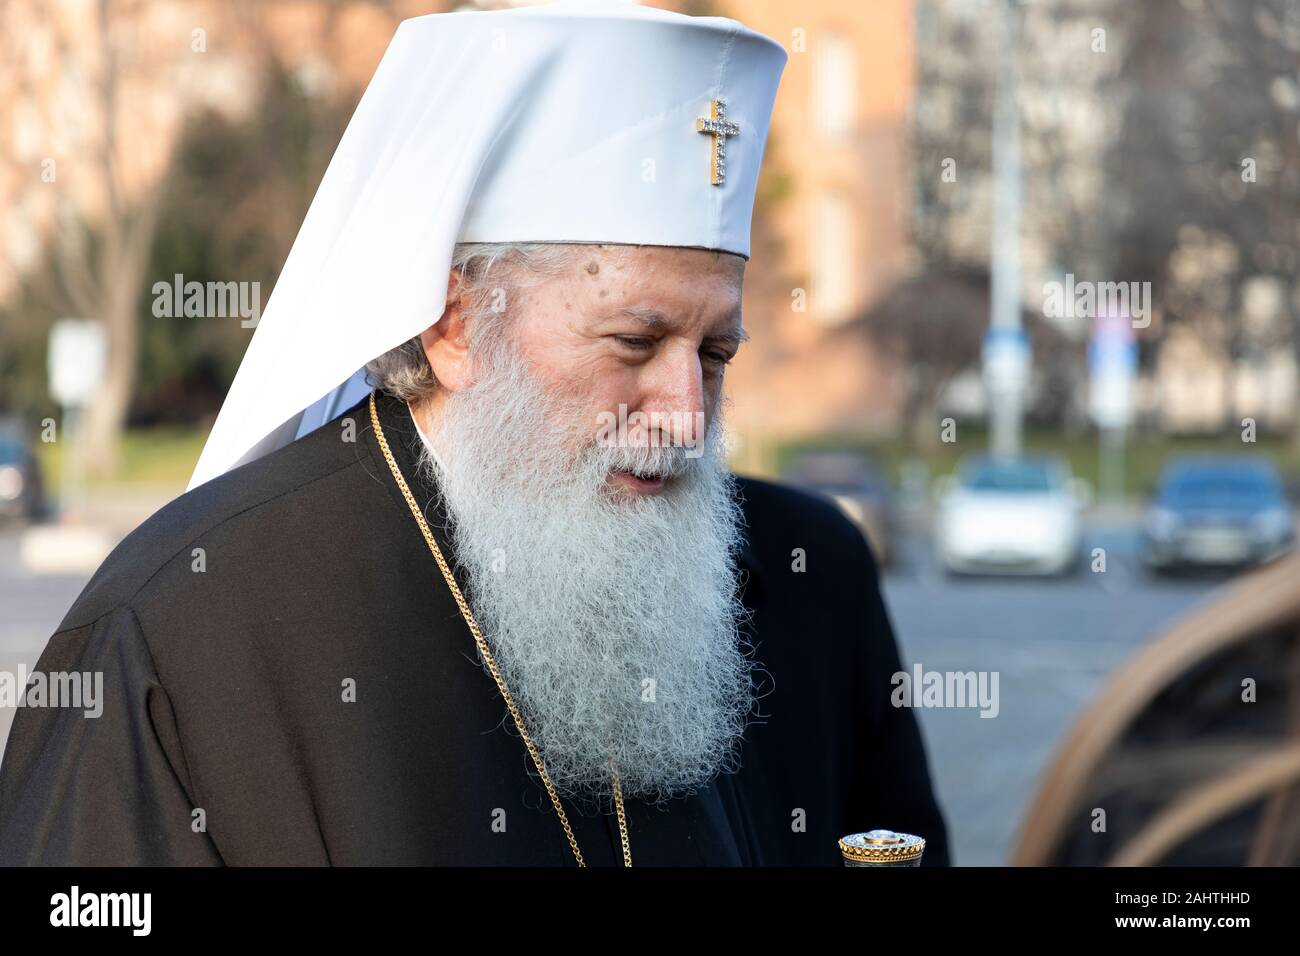 SOFIA, BULGARIE - 1 janvier : le patriarche bulgare néophyte au cours de la messe le 1er janvier 2020 à Sofia, Bulgarie. Banque D'Images